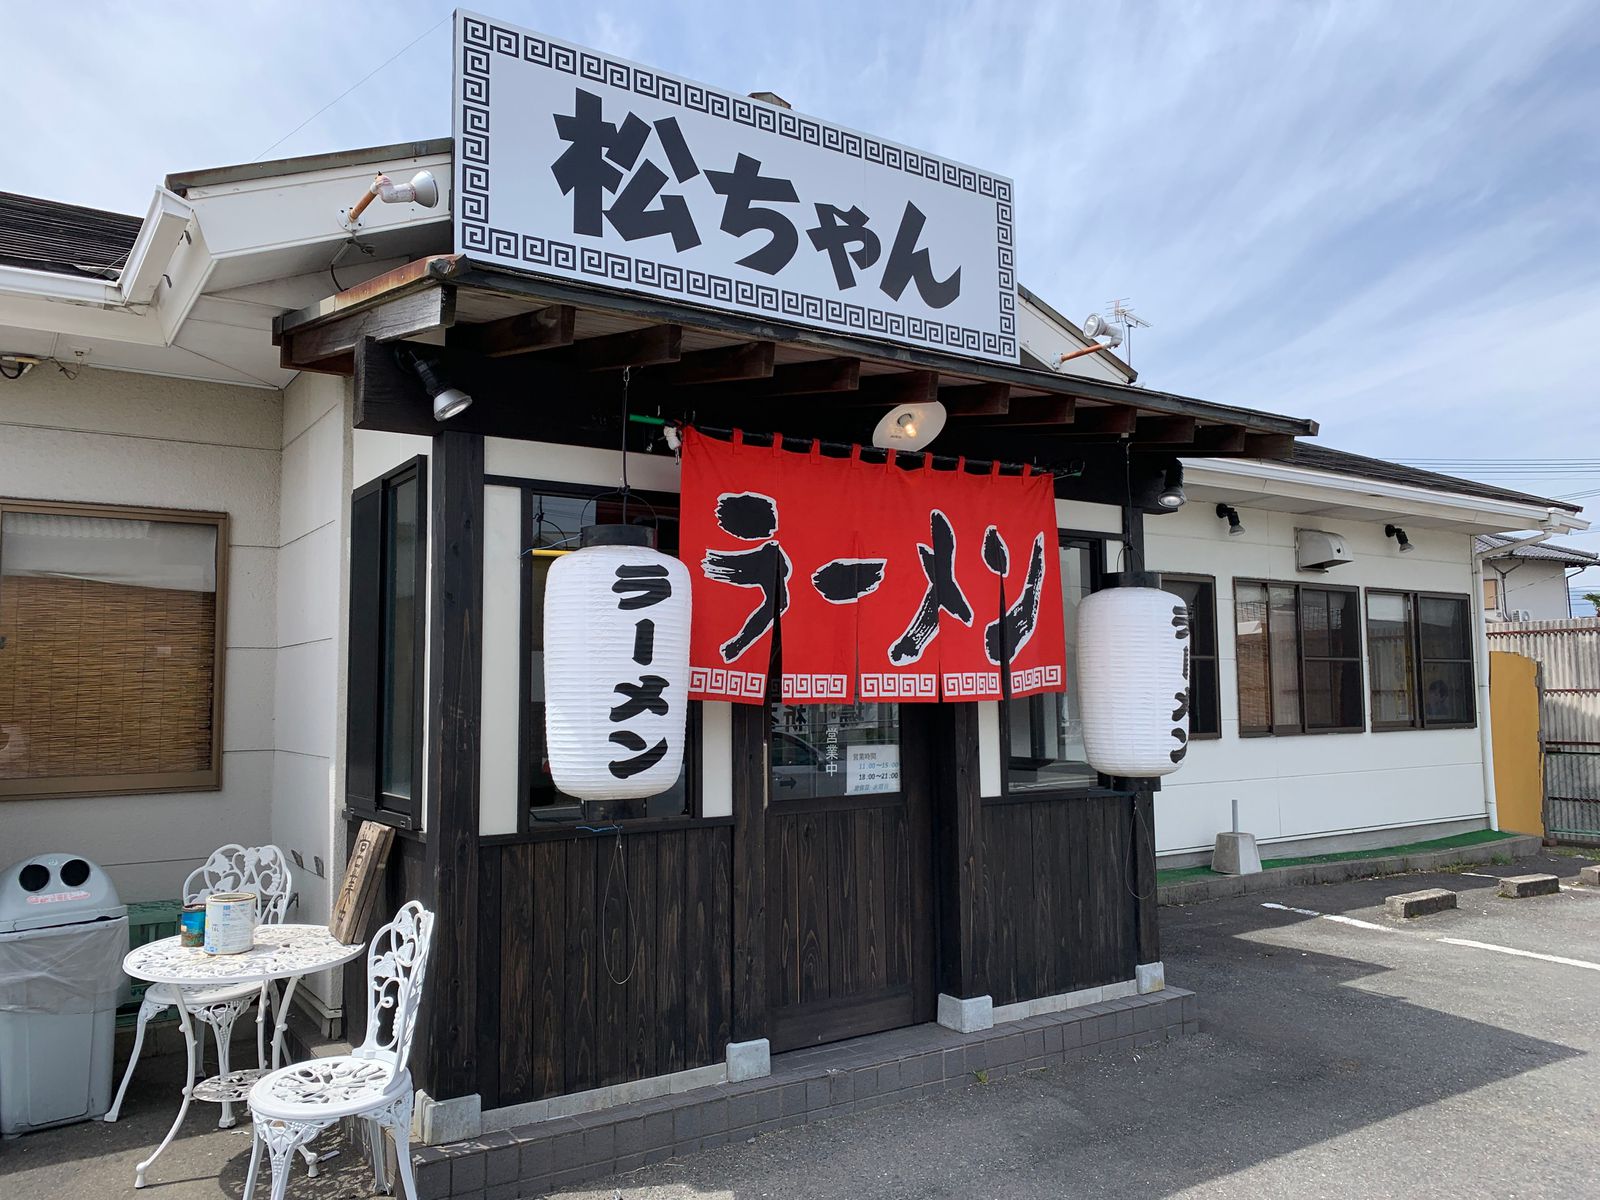 私のおすすめ「松っちゃんラーメン」は久留米ラーメン有名店「丸星ラーメン」の隣にある。